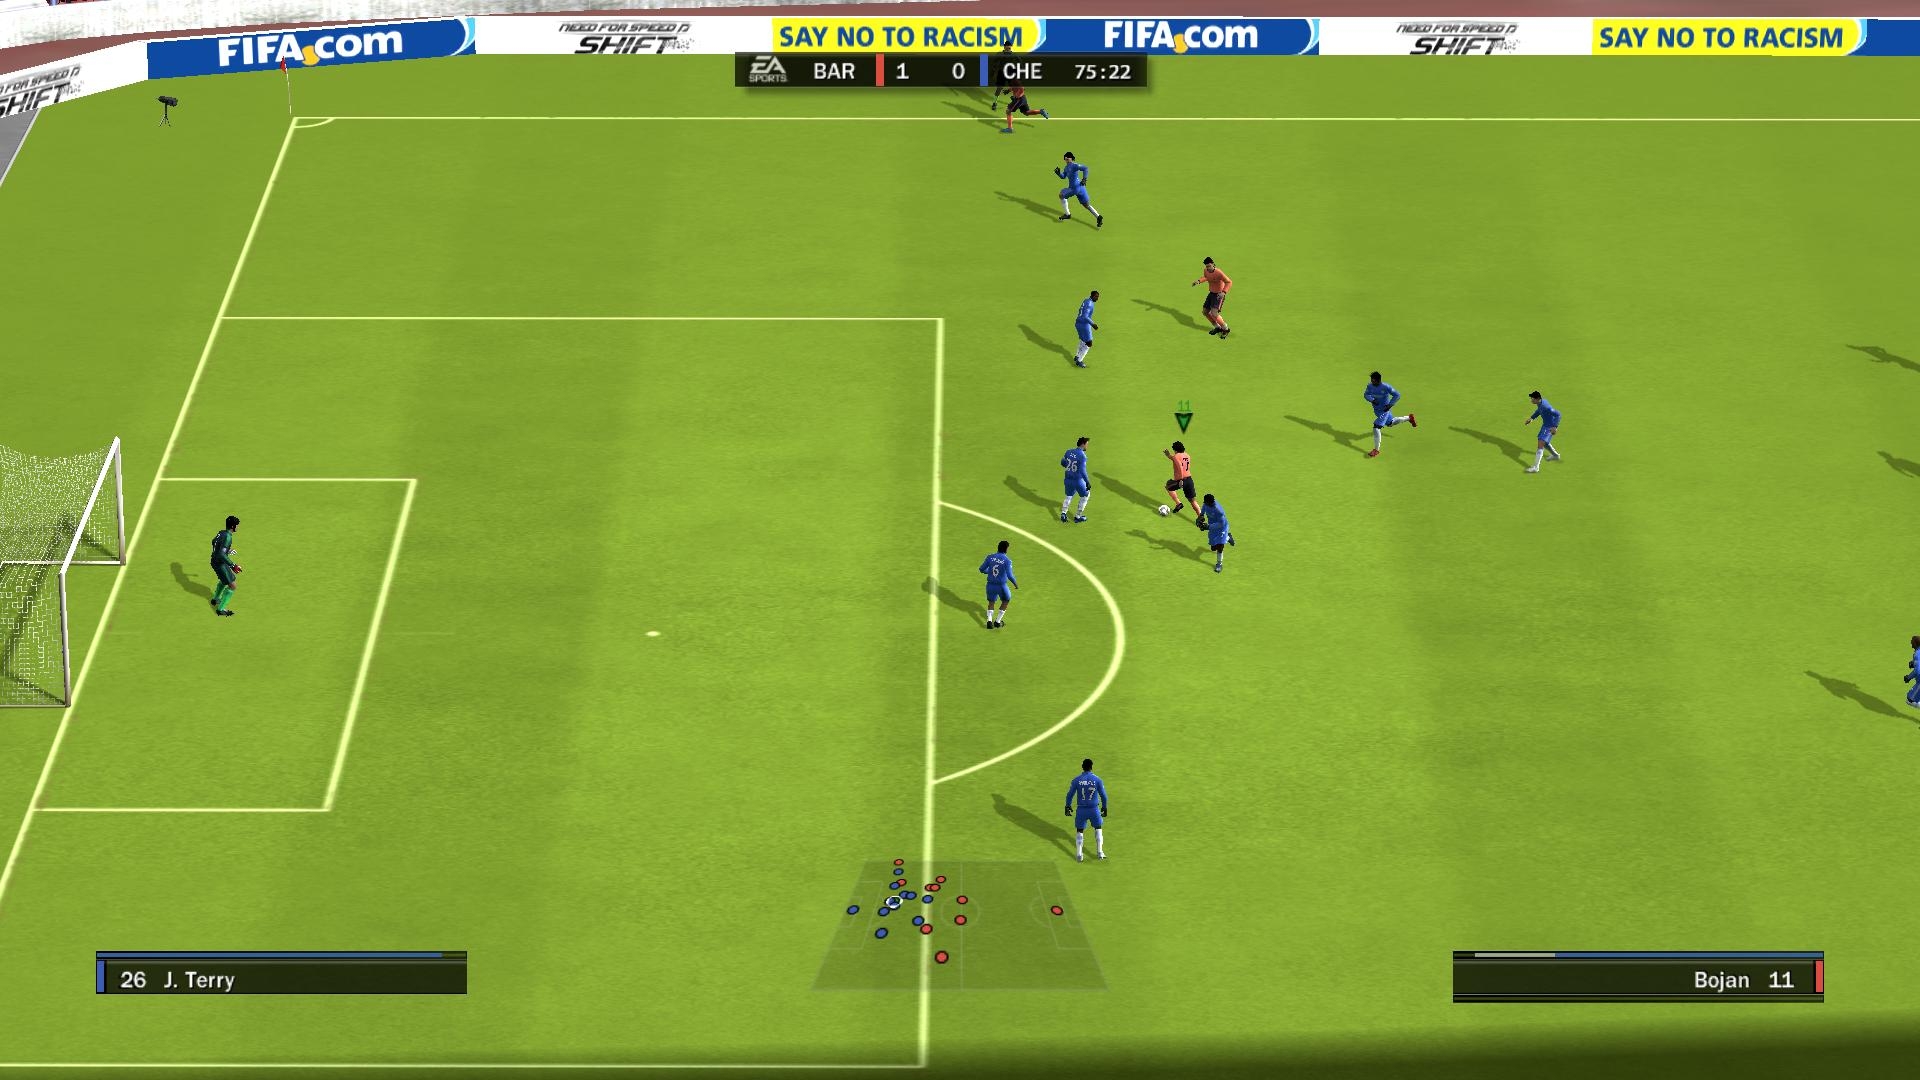 Скриншот из игры FIFA 10 под номером 77